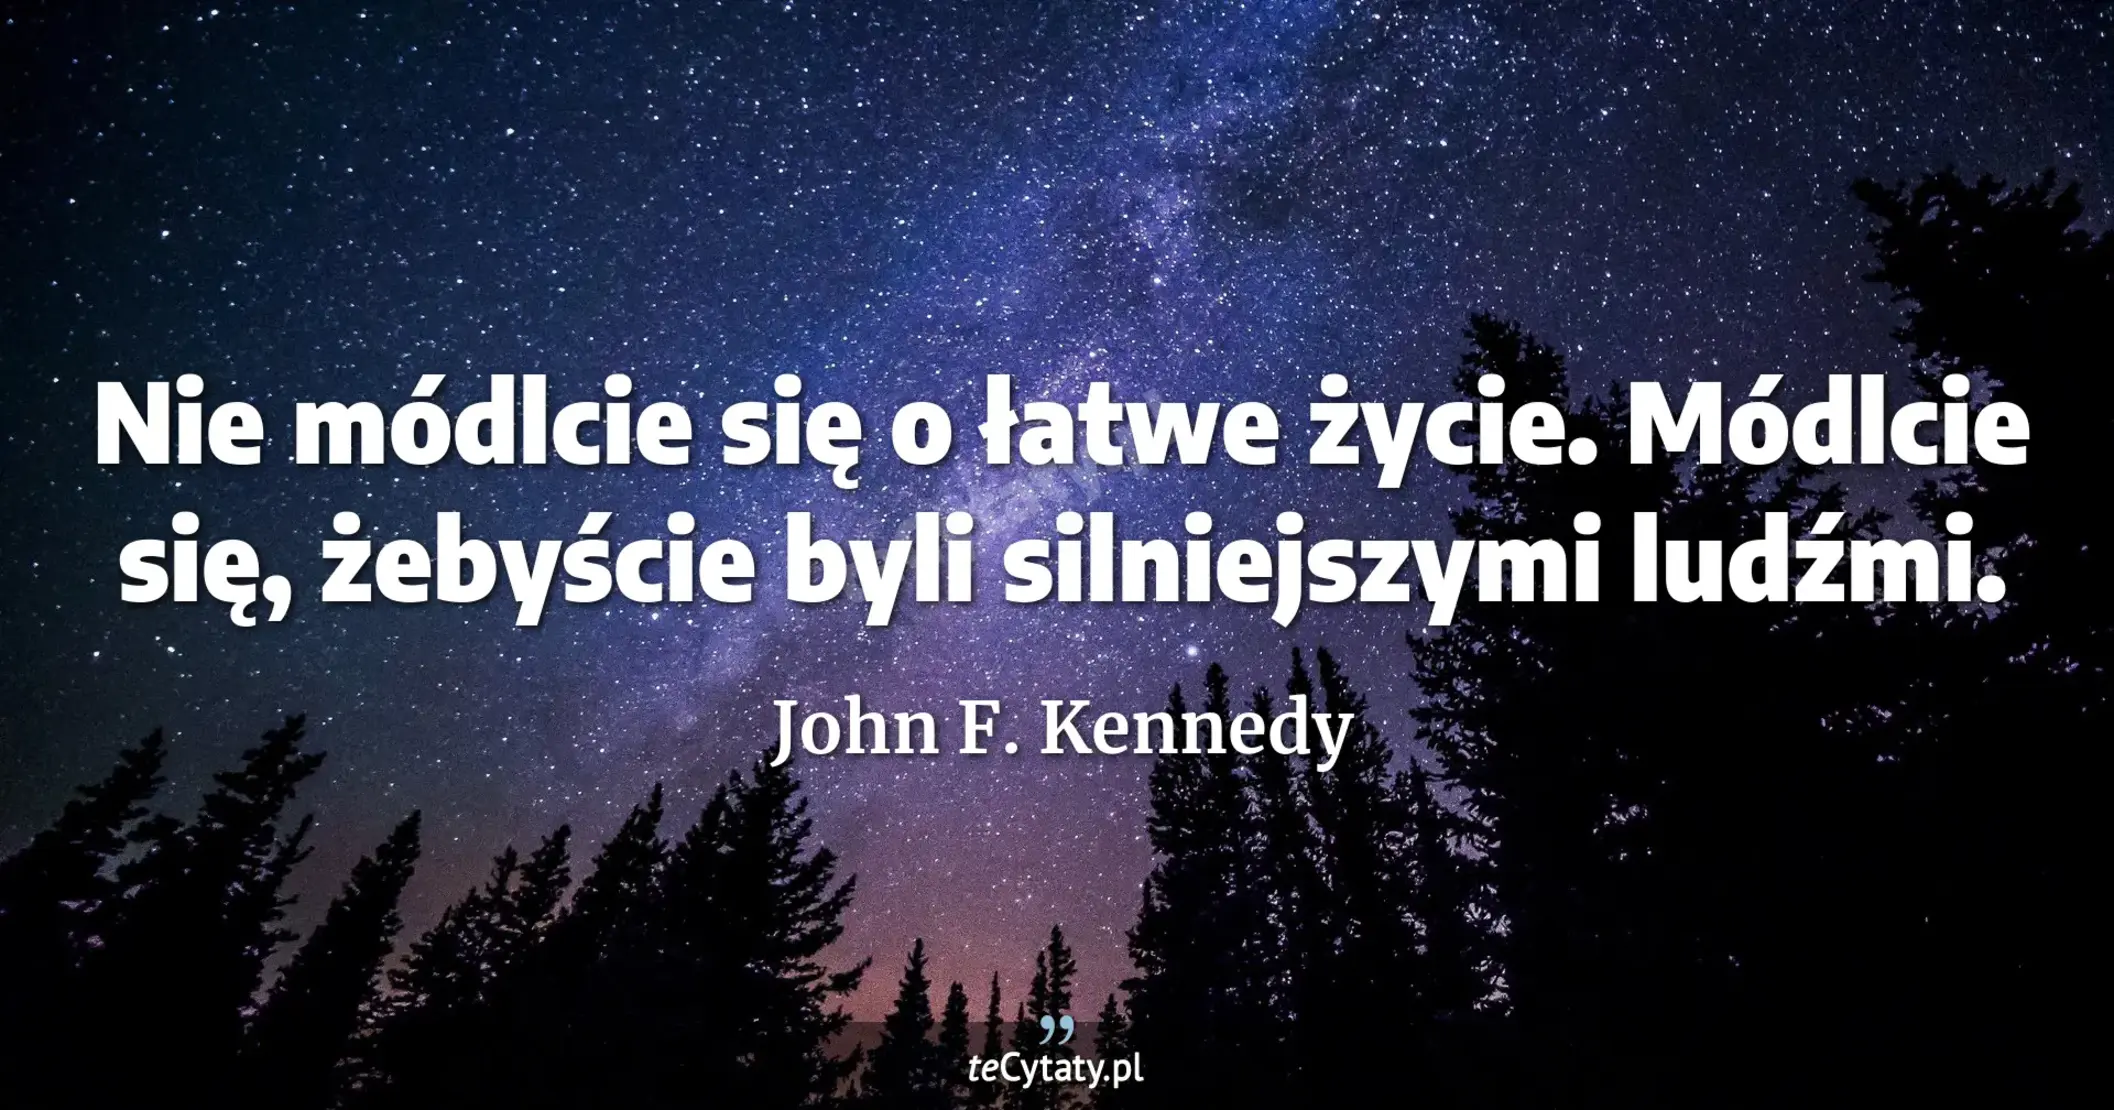 Nie módlcie się o łatwe życie. Módlcie się, żebyście byli silniejszymi ludźmi. - John F. Kennedy